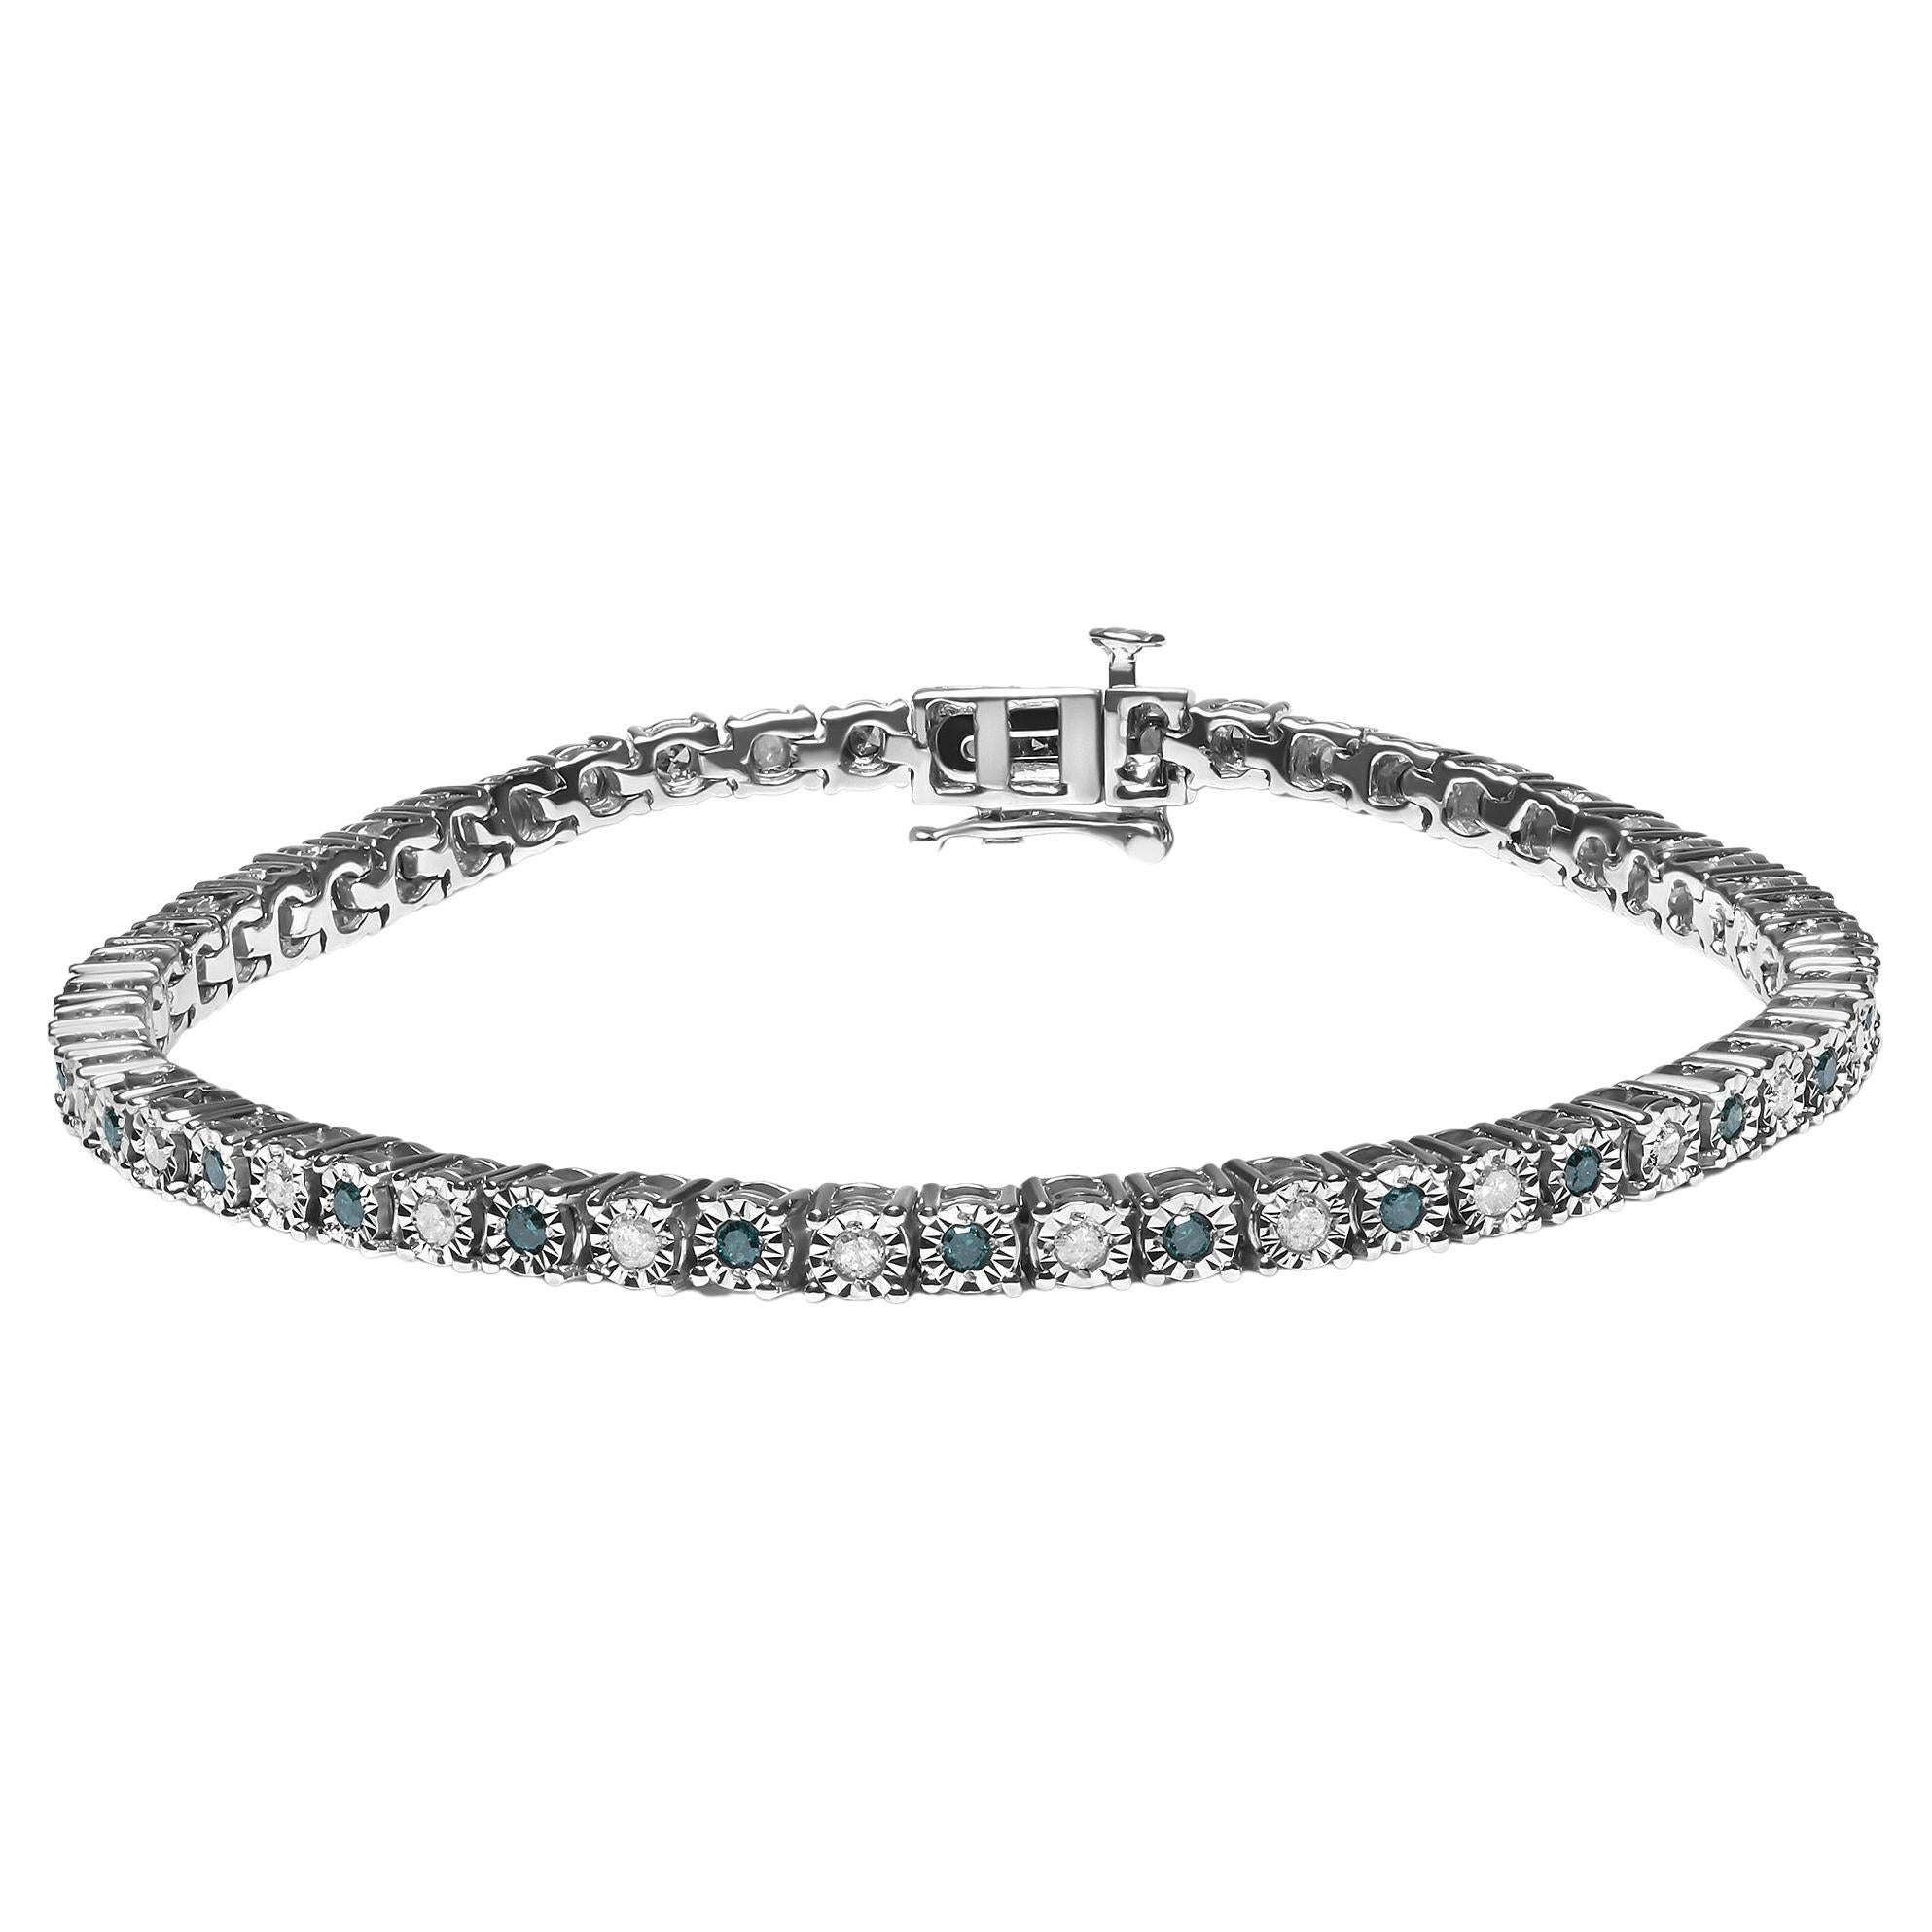 Bracelet tennis en argent avec diamants blancs ronds de 1,0 carat et diamants verts traités